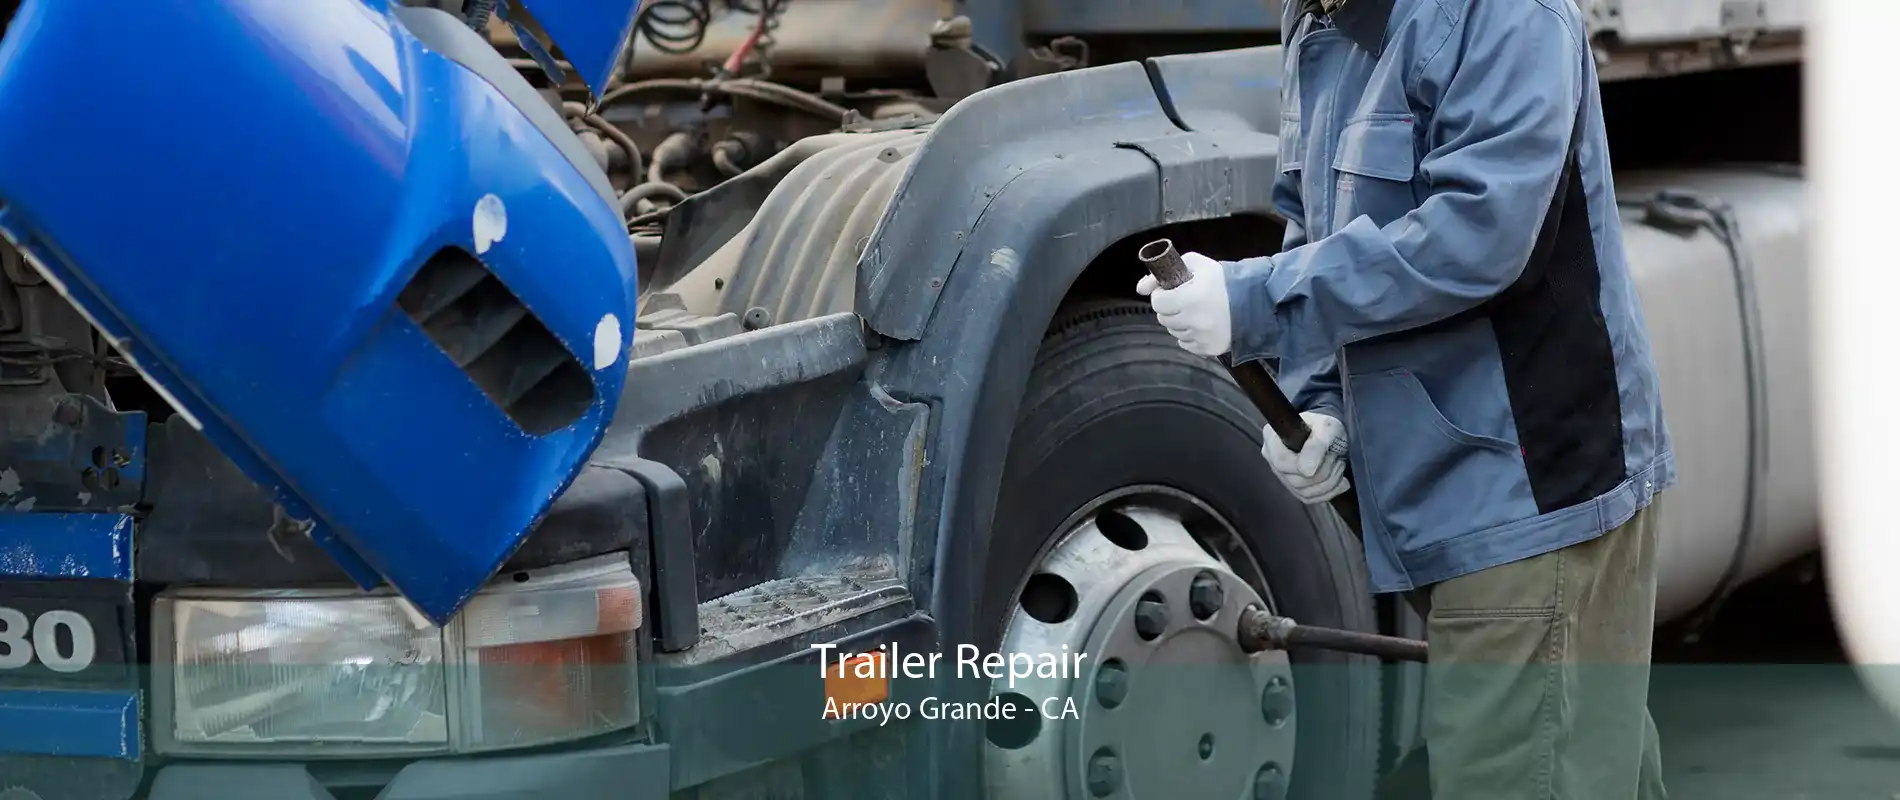 Trailer Repair Arroyo Grande - CA